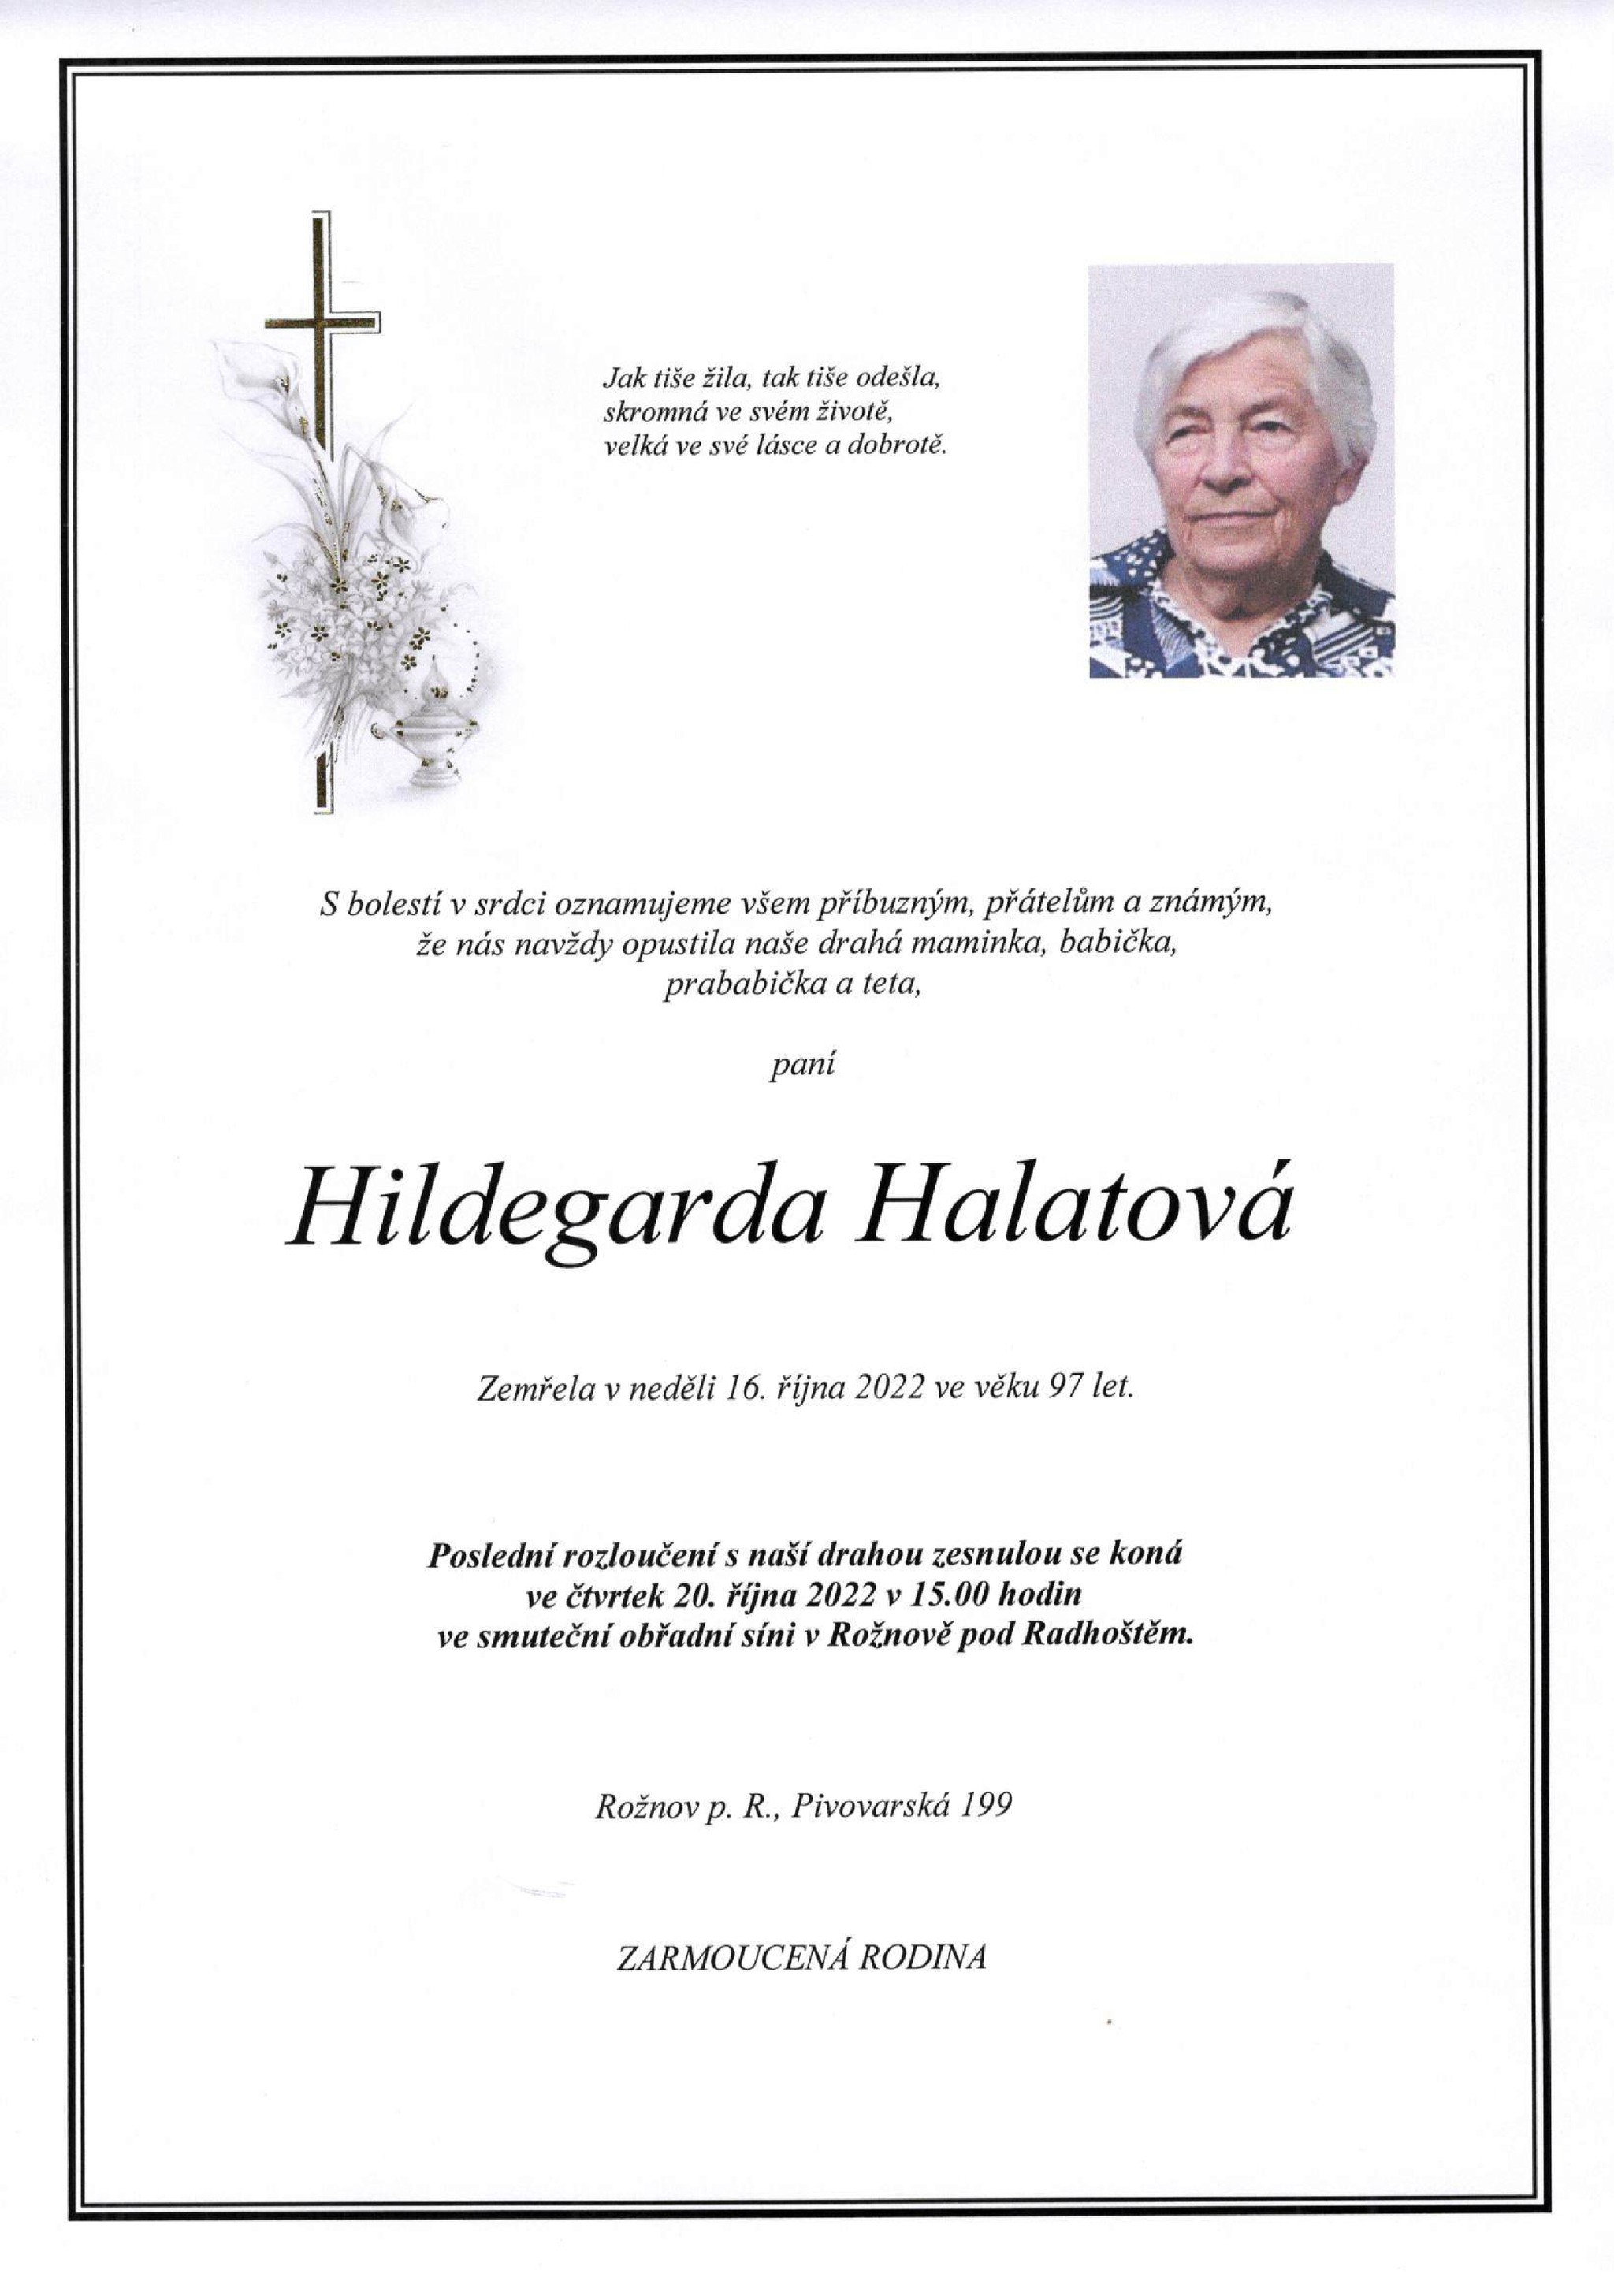 Hildegarda Halatová